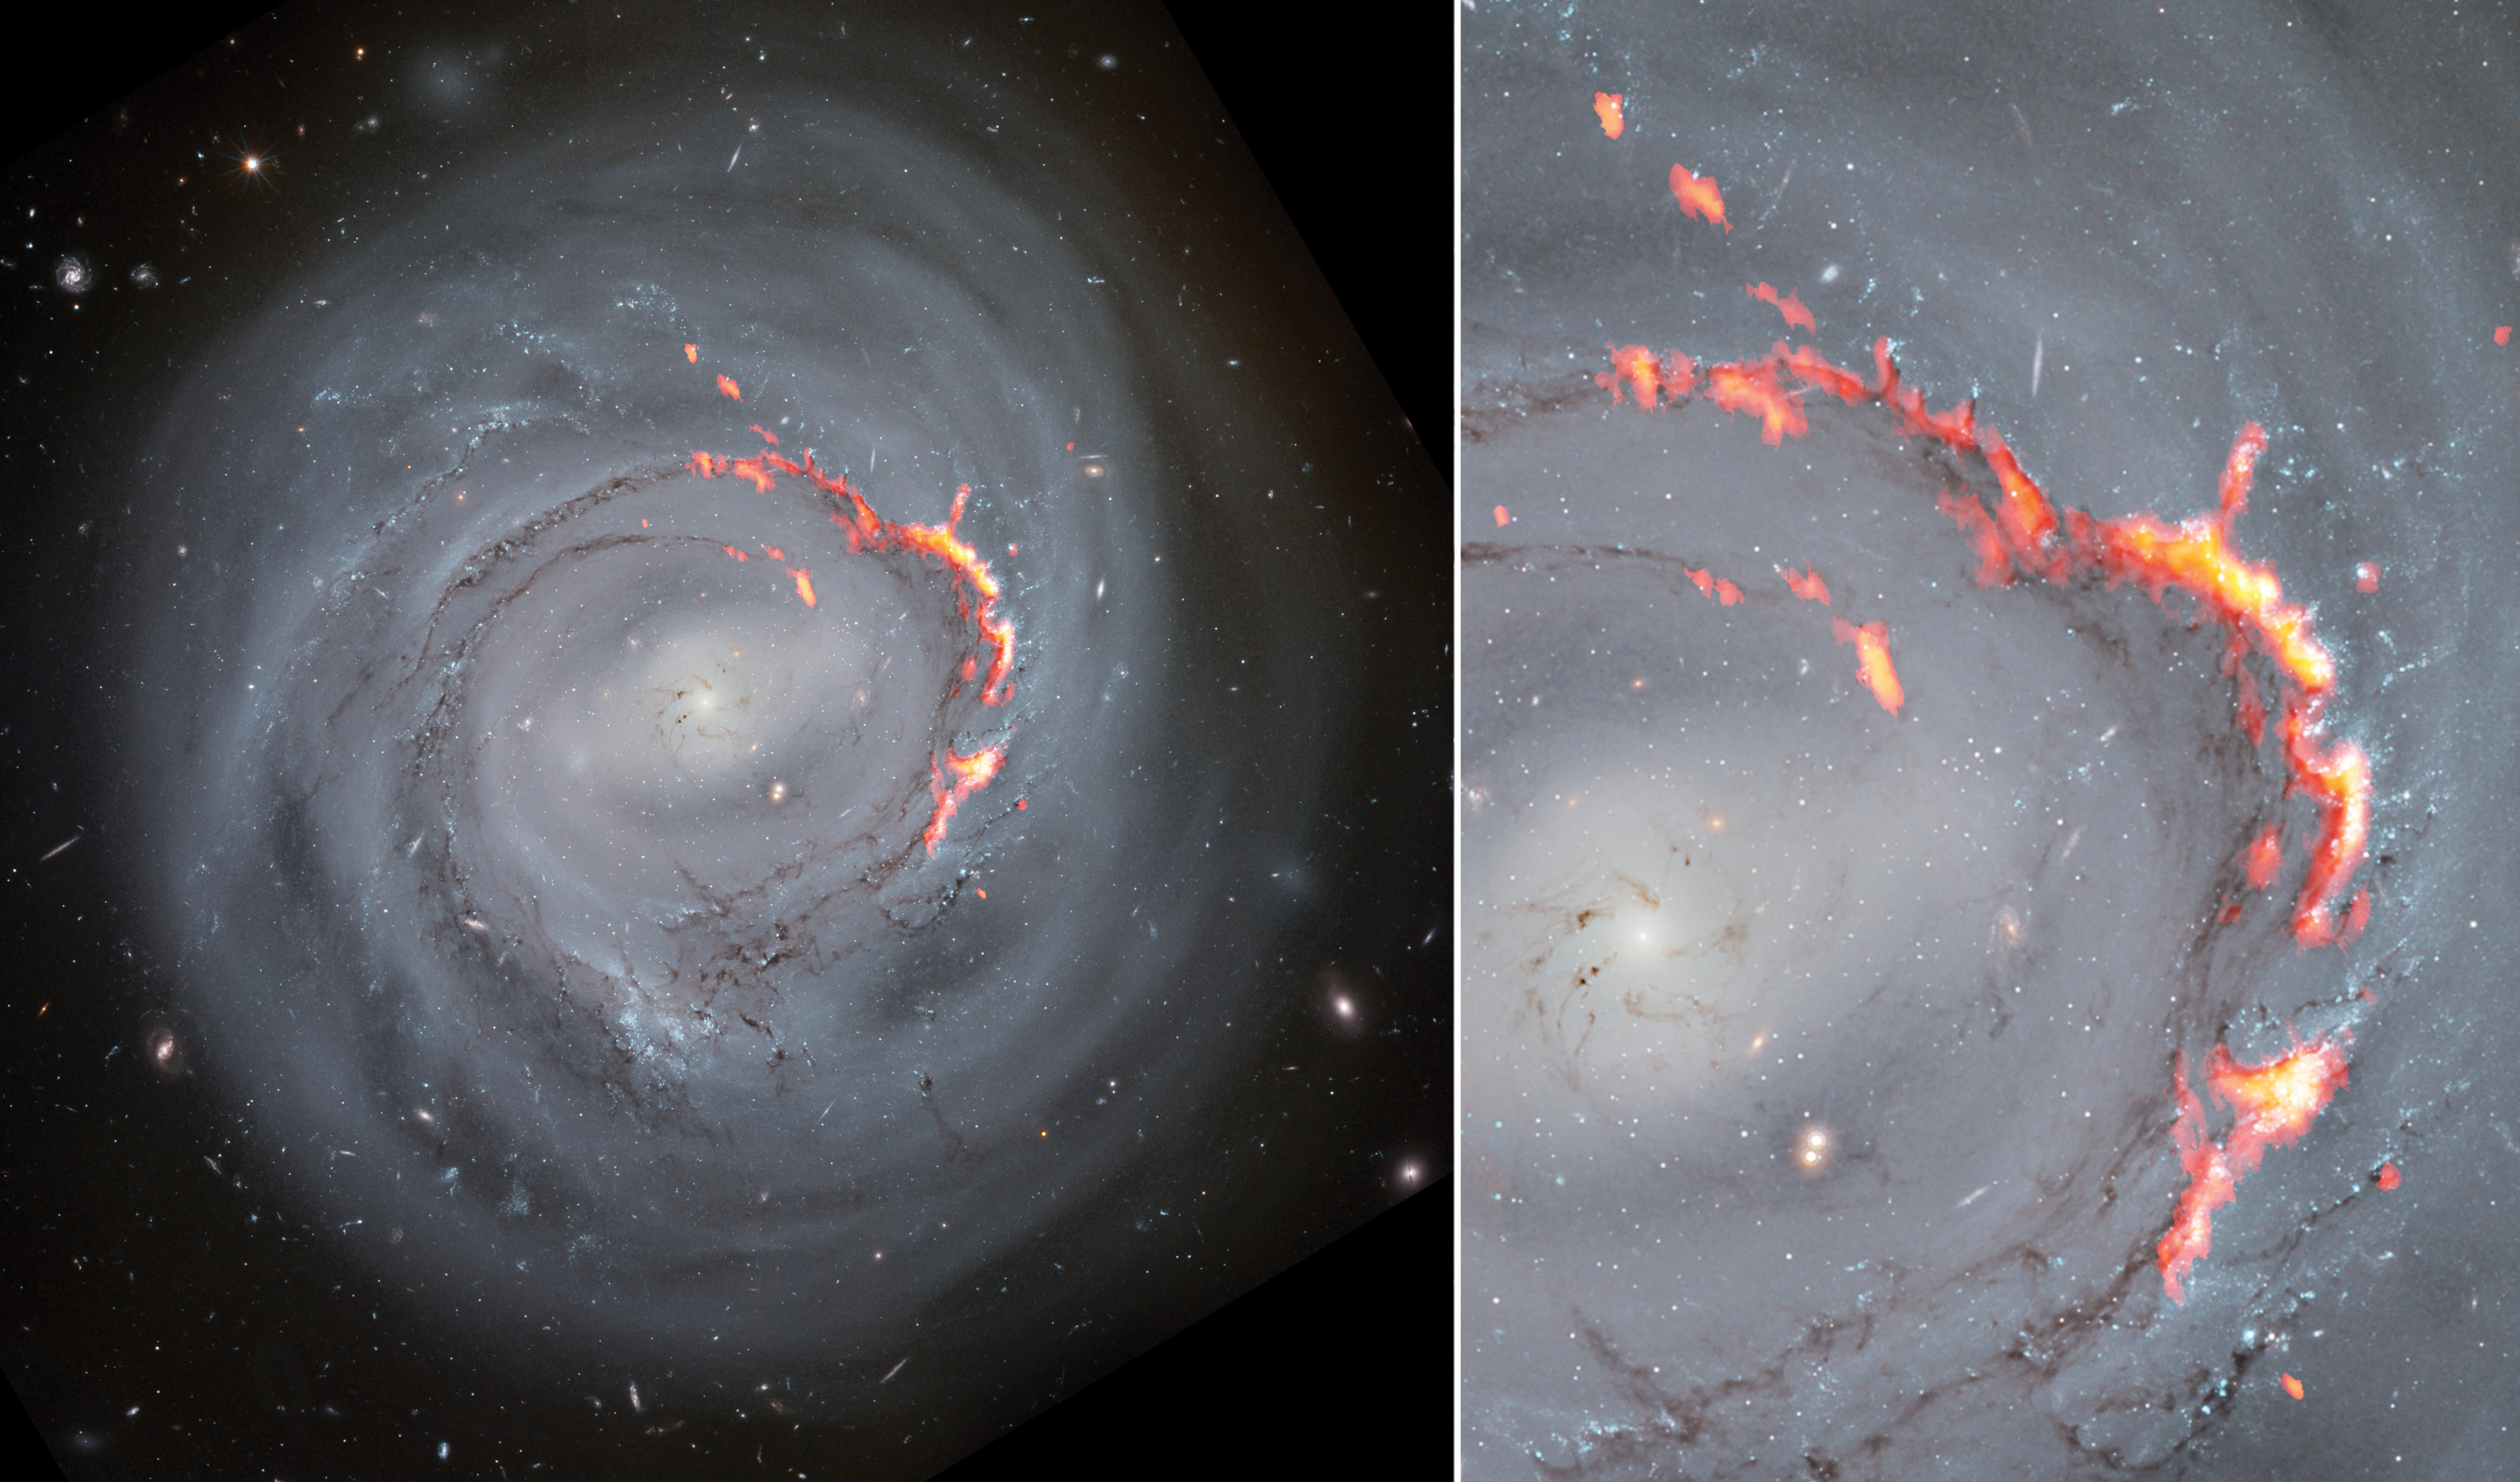 Esta combinación de imágenes muestra los datos de ALMA (rojo y naranja) superpuestos a imágenes ópticas de NGC 4921 obtenidas con el telescopio espacial Hubble. Un nuevo estudio de esta galaxia espiral barrada reveló la presencia de estructuras filamentosas similares a los Pilares de la Creación, pero mucho más grandes. Estas estructuras se forman por efecto de un fenómeno conocido como despojo por presión, que desplaza el gas de una galaxia y la despoja del material necesario para formar nuevas estrellas. Créditos: ALMA (ESO/NAOJ/NRAO)/S. Dagnello (NRAO), NASA/ESA/Hubble, K. Cook (LLNL), L. Shatz